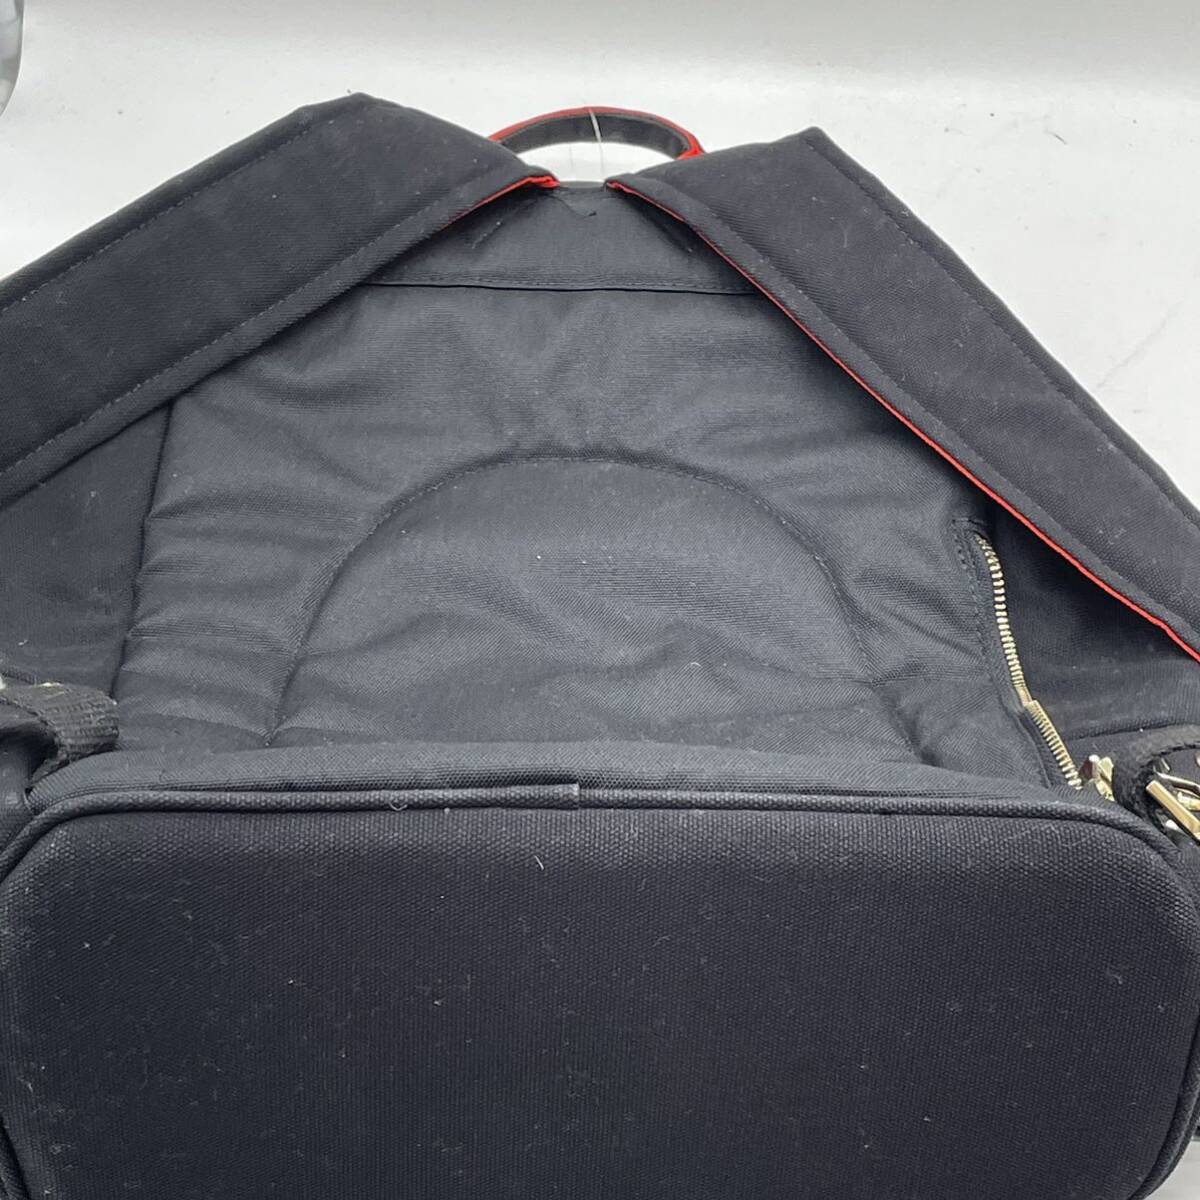 ⑩BN3688* DIAVEL Diavel Star z backpack rucksack black Gold metal fittings high capacity 